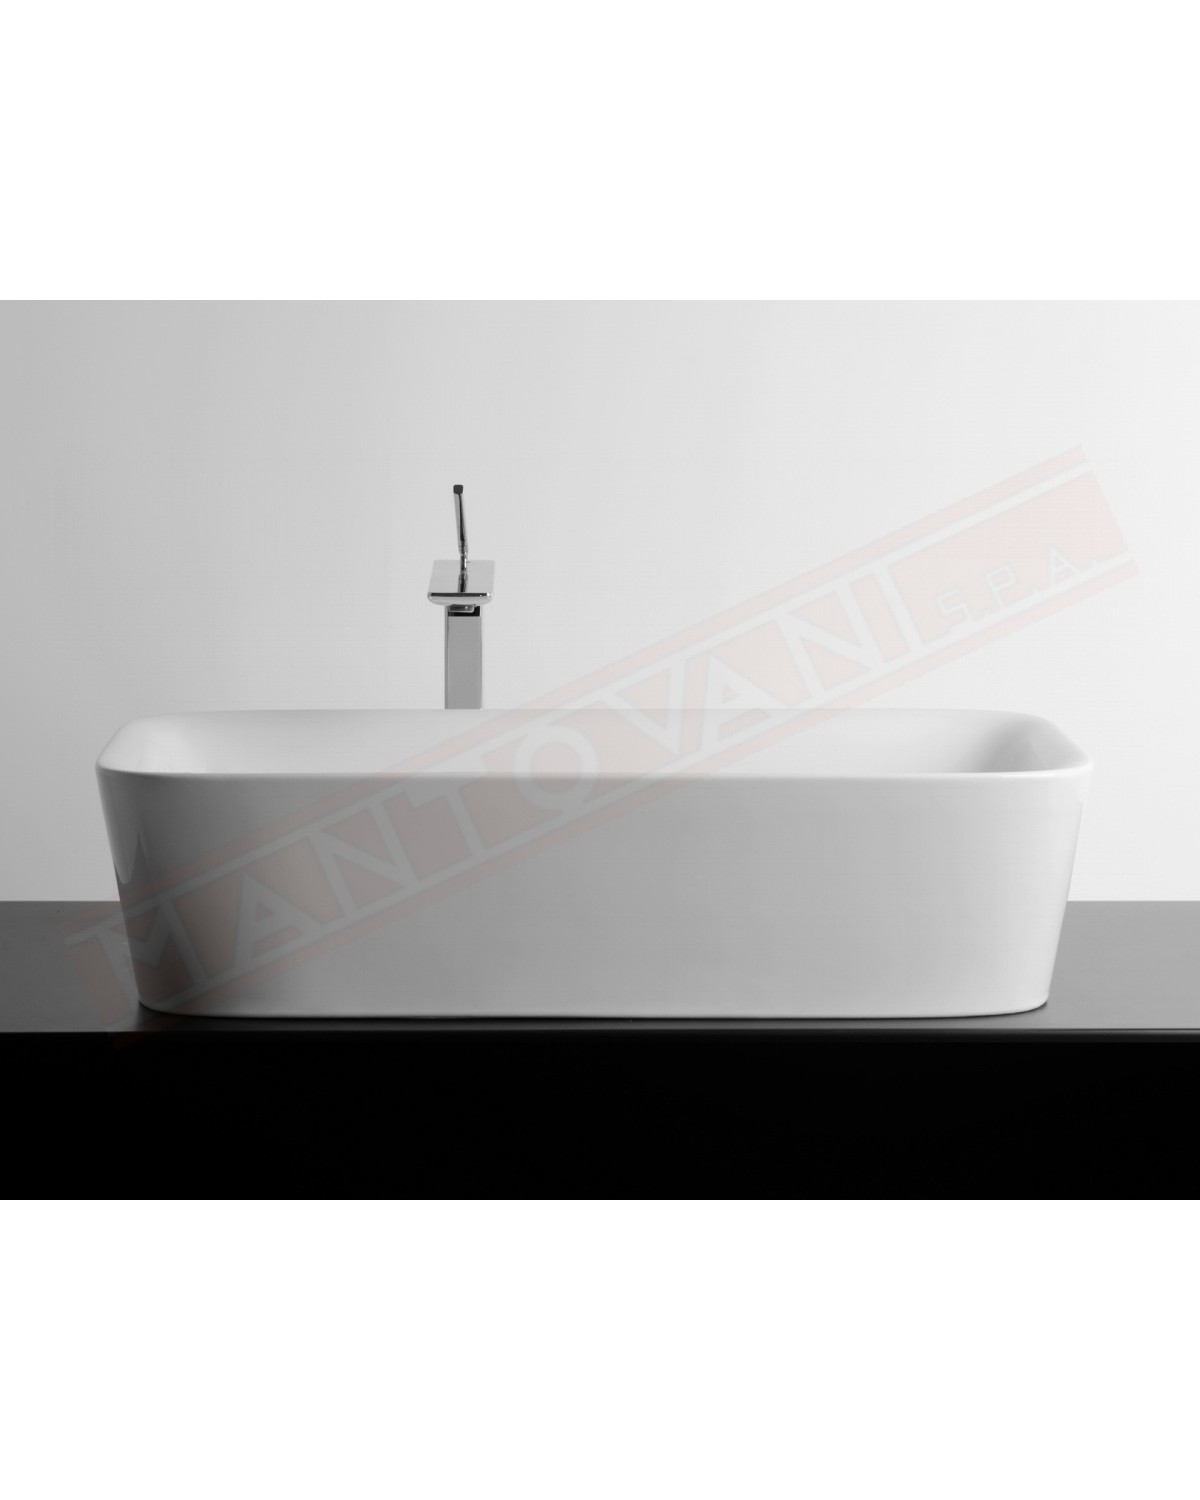 Lavabo Bagno Soul 700x380xh180 bianco lucido . Valdama lavabo da appoggio disegnato da Monia Marzano senza foro rubinetto.